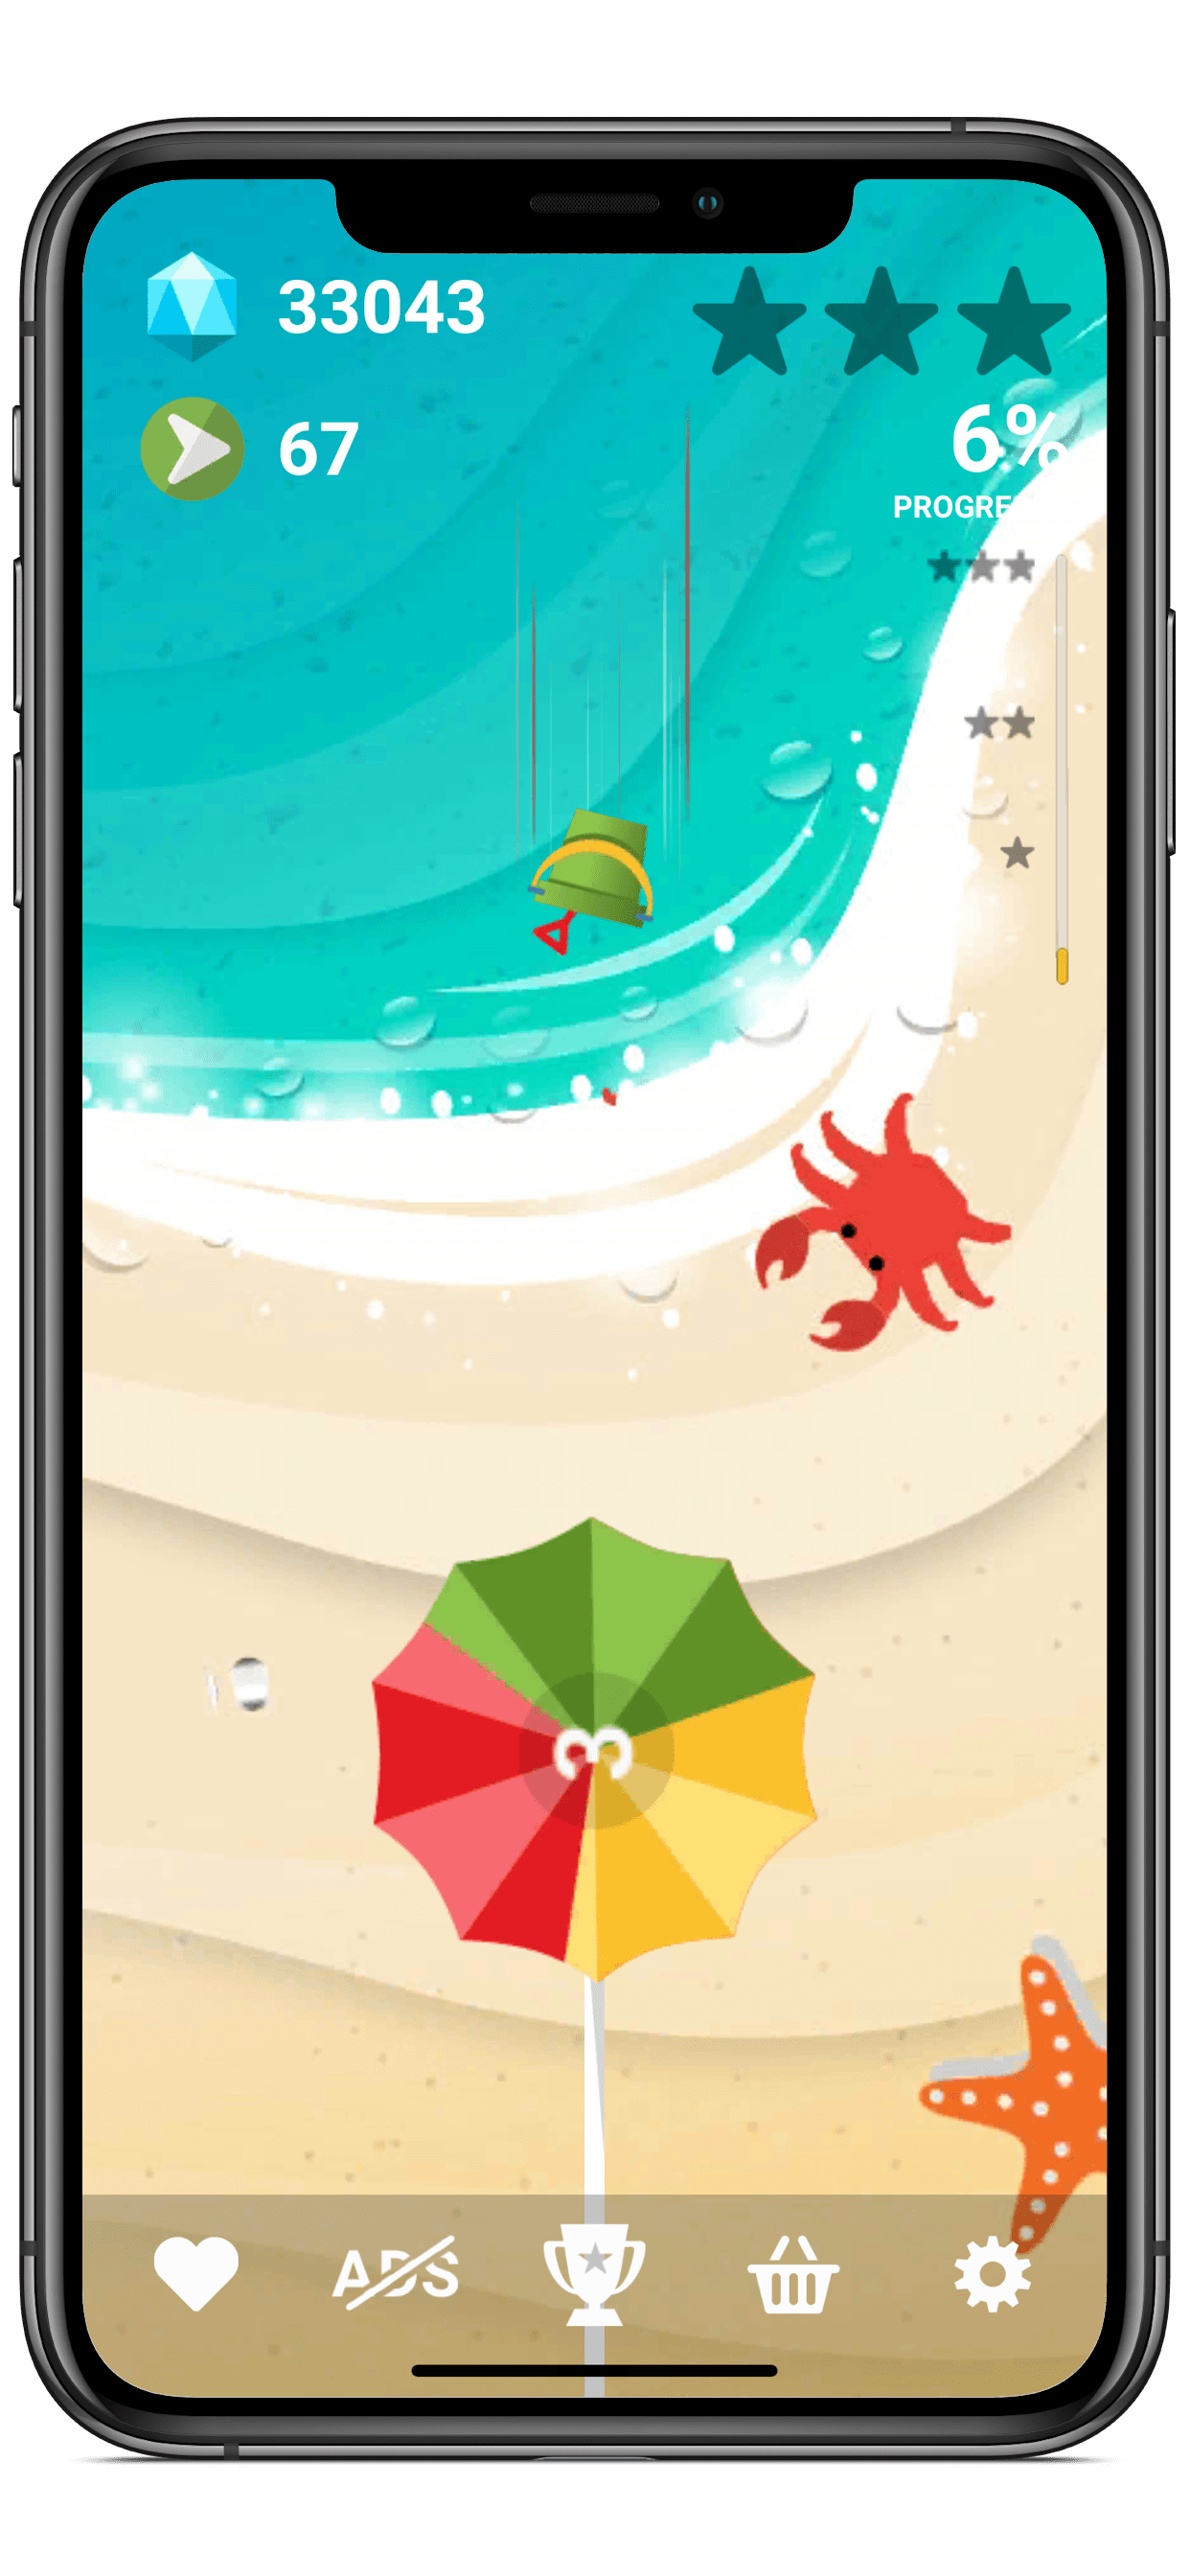 5 10 Darmowa gra SWIRLY dla Android, iOS, Windows i na urządzenia mobilne - kolory i kształty, brak przemocy